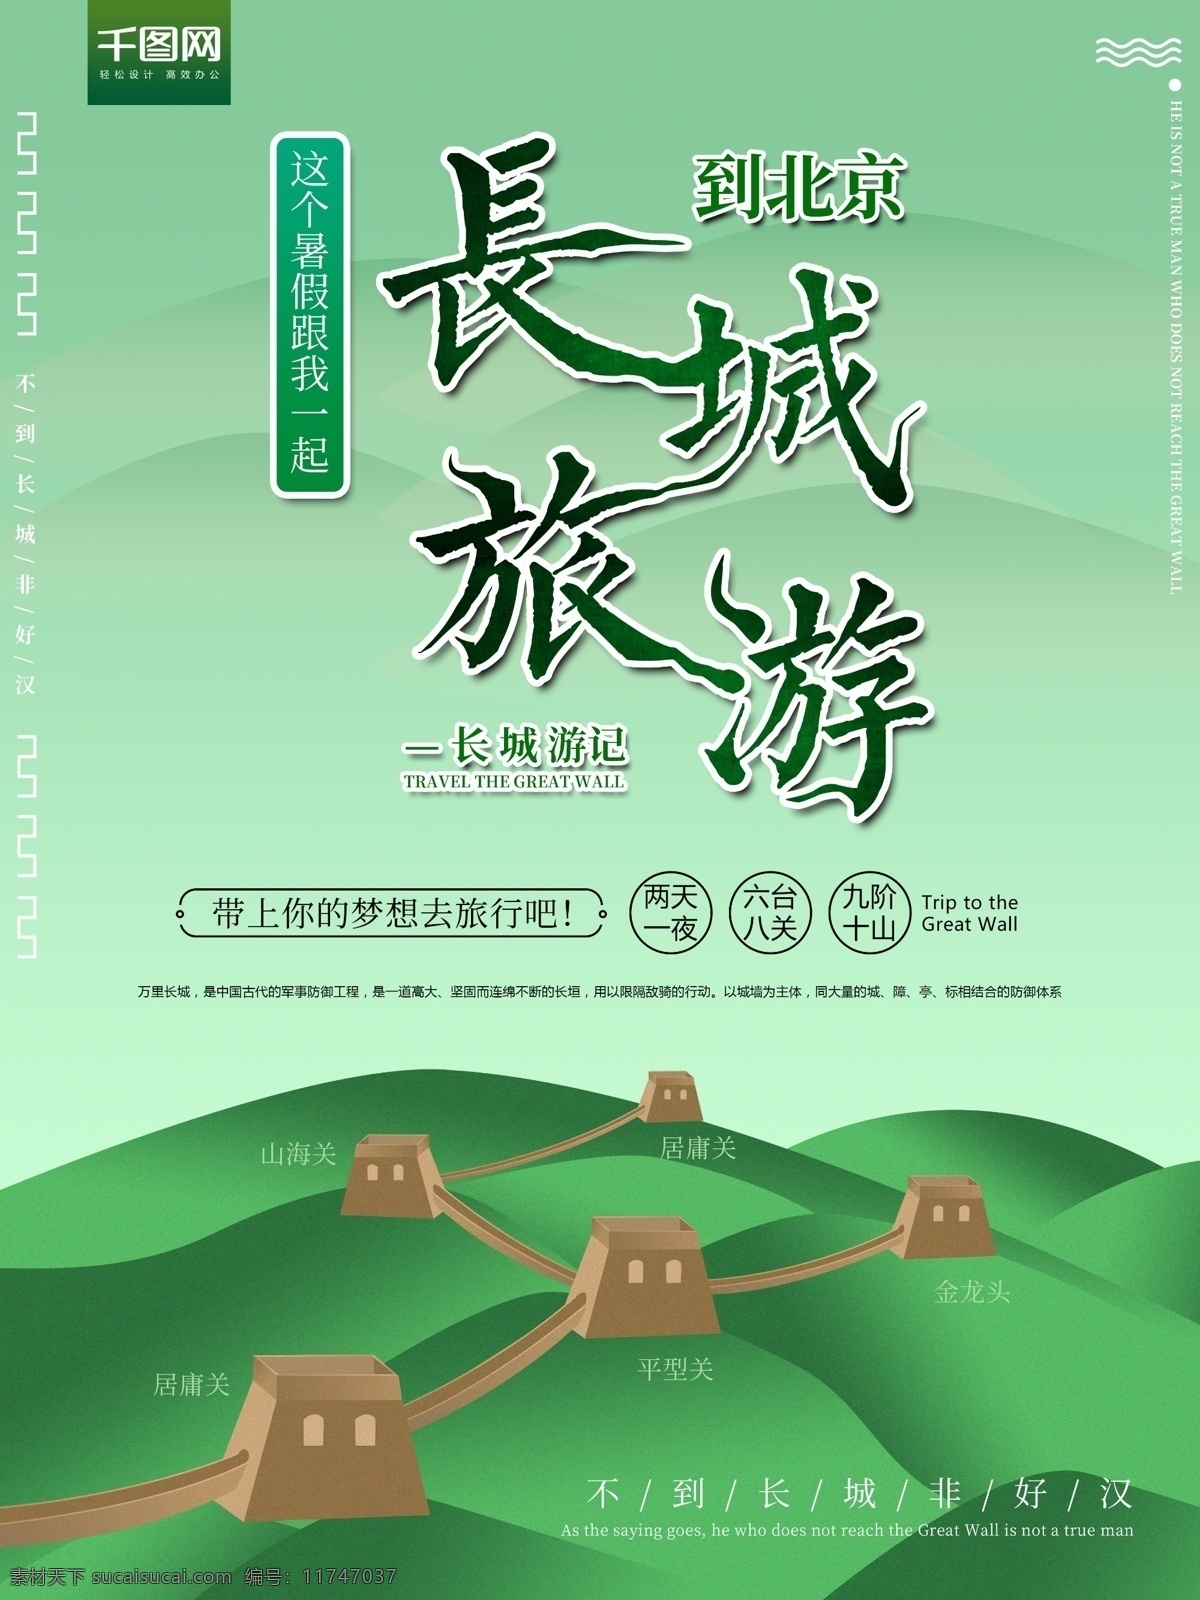 北京 长城 旅游 海报 旅游海报 绿色 促销海报 旅游促销海报 渐变 北京长城 卡通 手绘 山